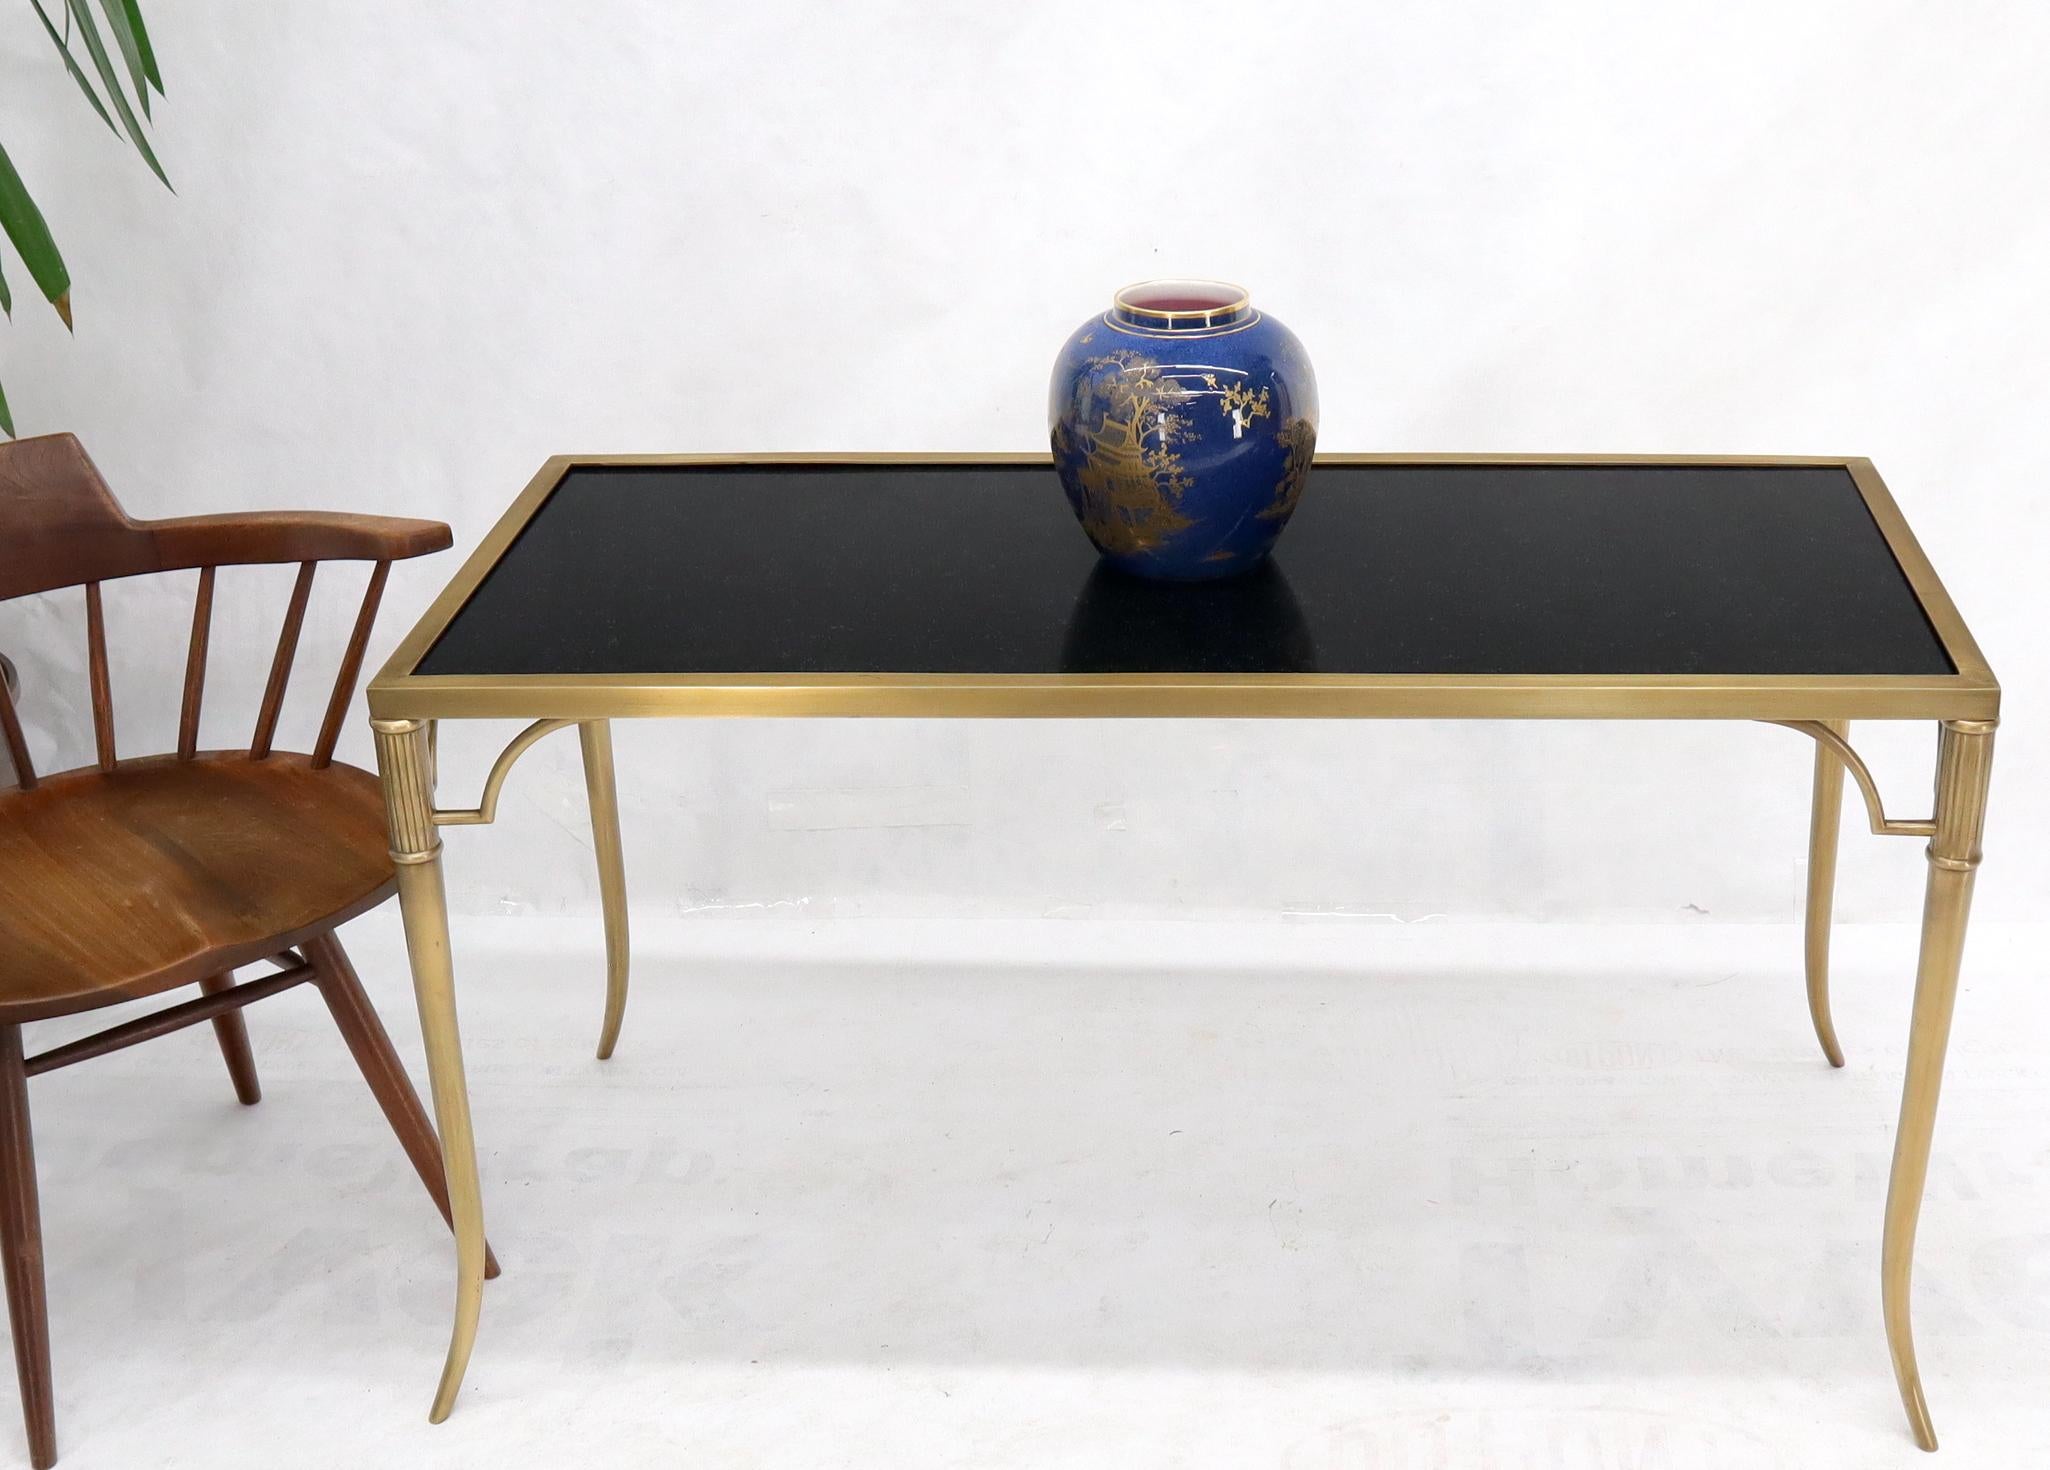 Table basse en matériaux lourds, composée d'un plateau en granit noir massif et d'un cadre en laiton massif avec des pieds effilés.